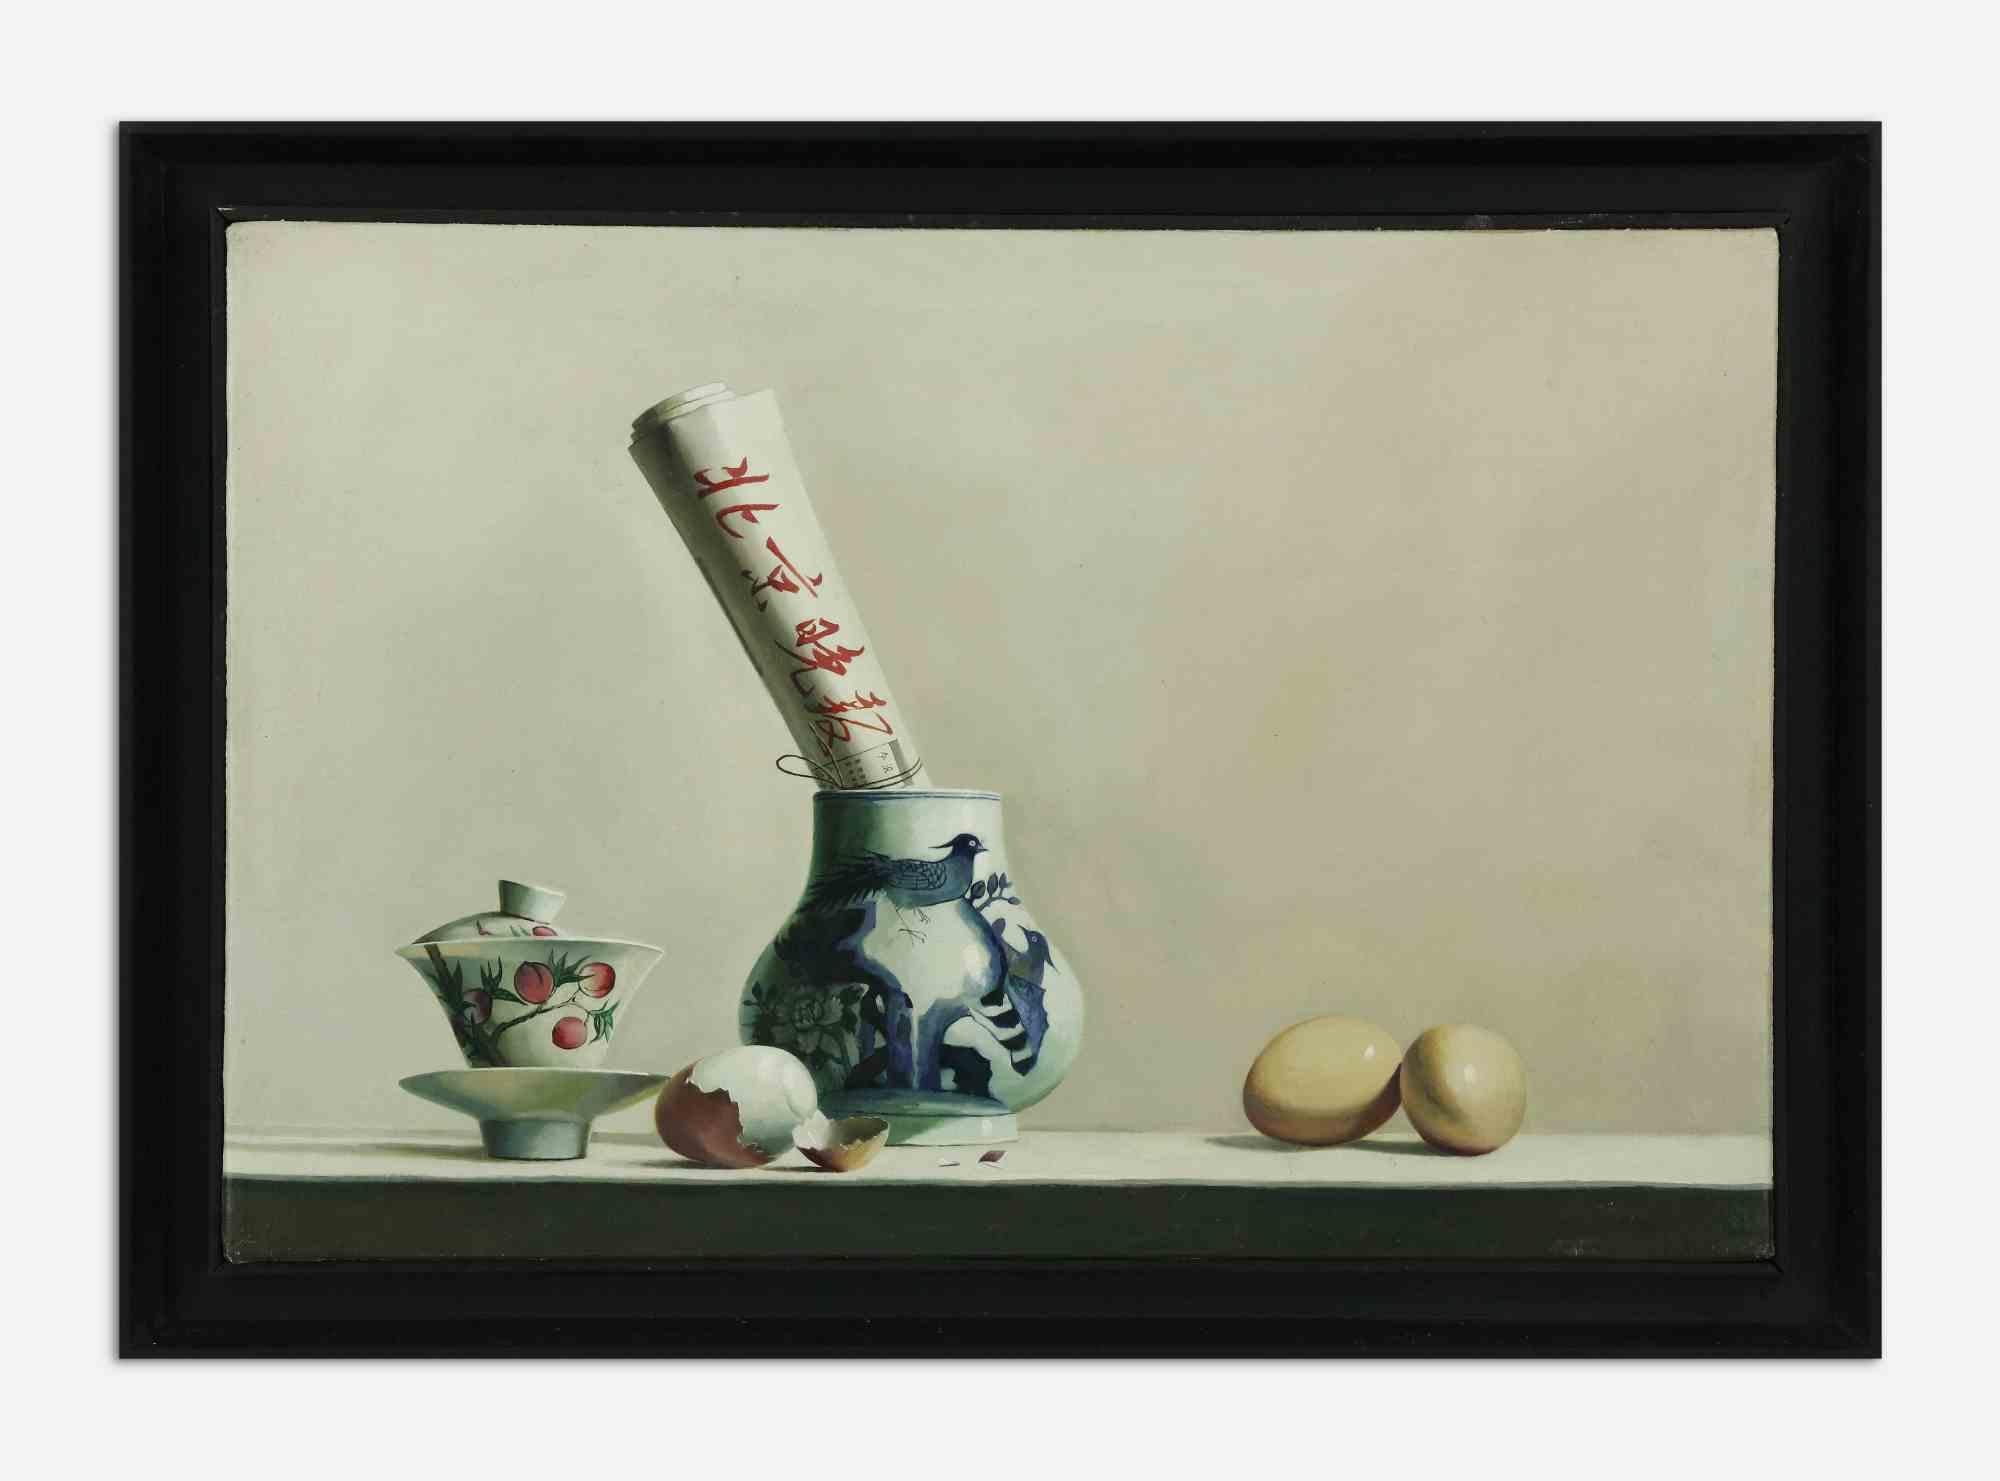 Petit-déjeuner est une peinture à l'huile originale réalisée en 2007 par Zhang Wei Guang (Miroir).

Belle peinture à l'huile sur toile. 

Cadre inclus 50,5 x 3,5 x 60,5 cm

Signé et daté à la main au dos.

Bonnes conditions.

Zhang Wei Guang,